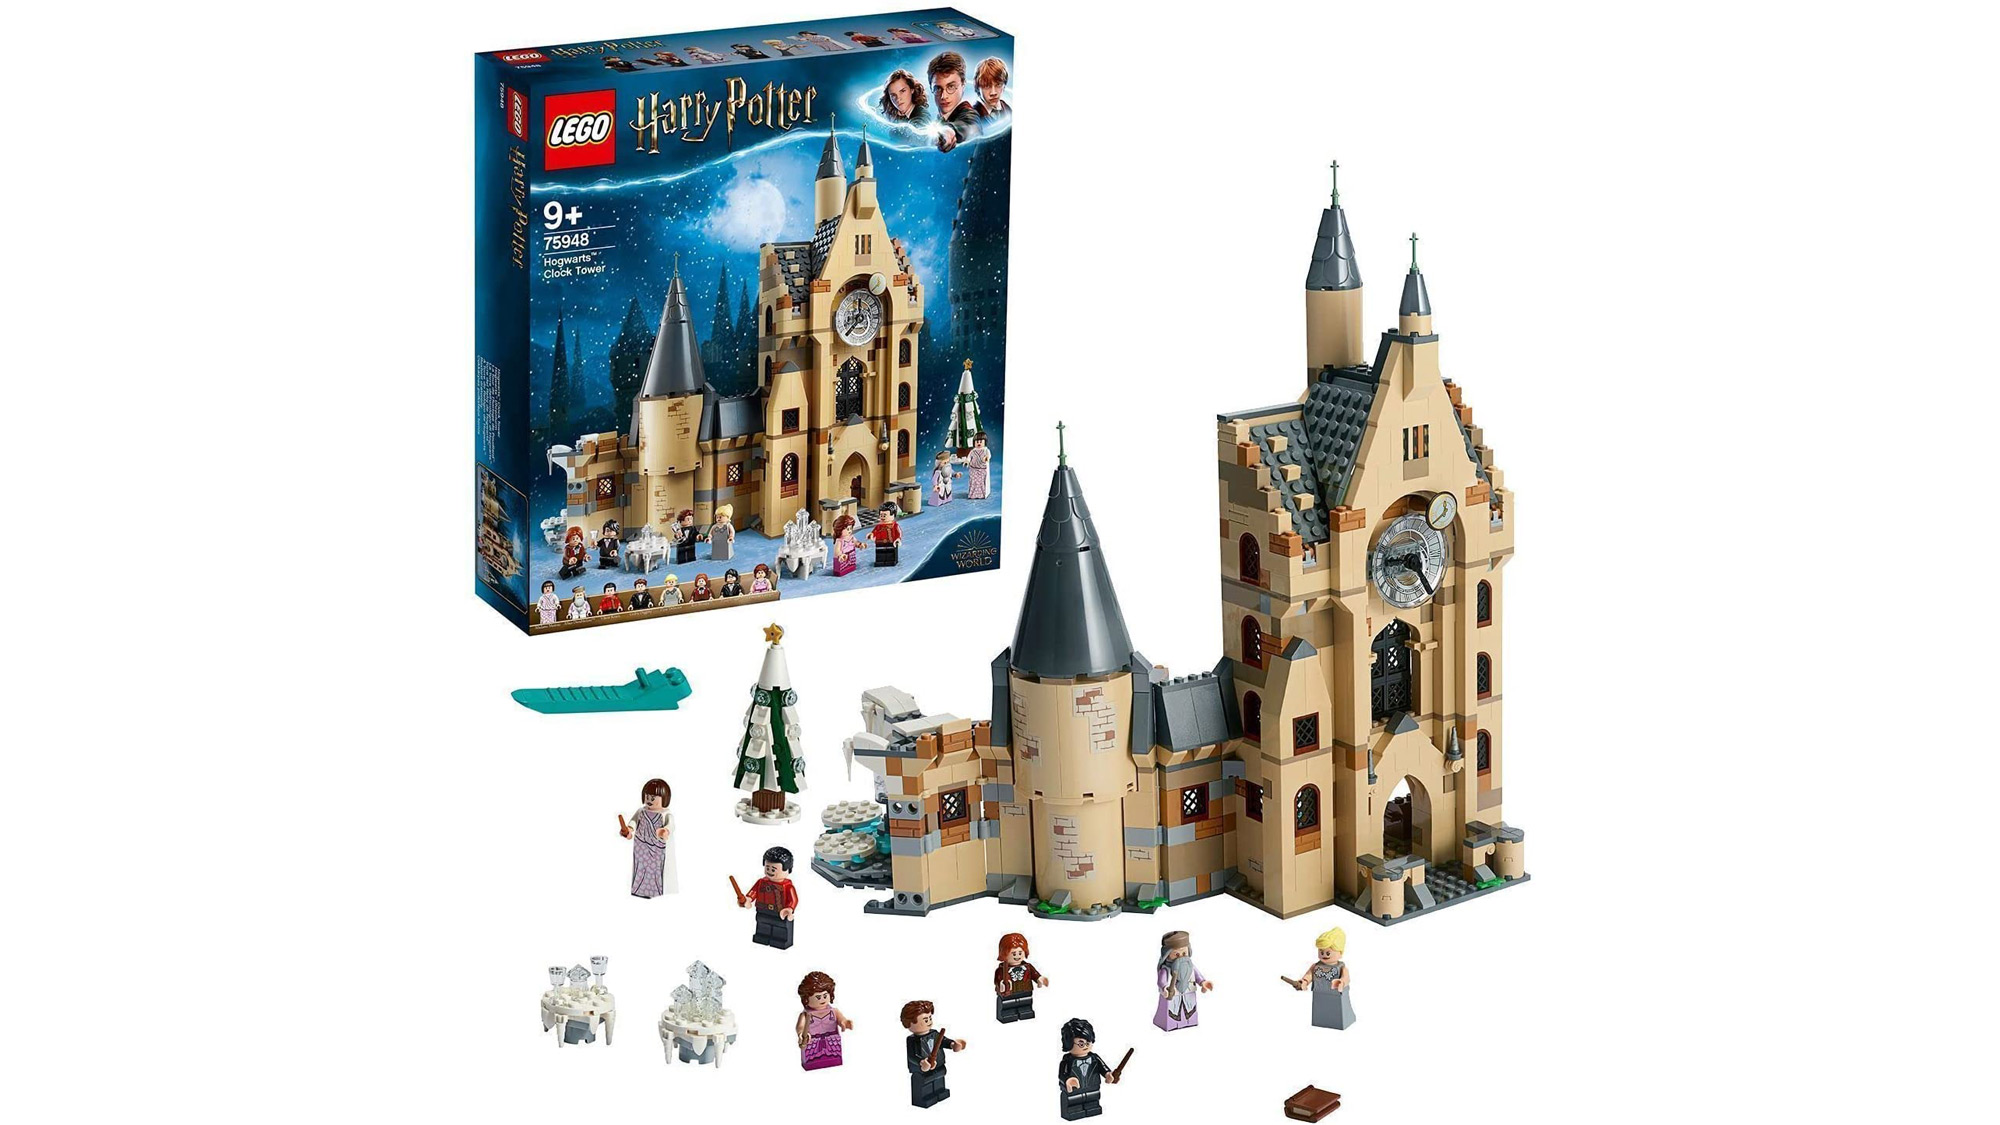 Harry Potter Hogwarts Castle Clock Tower Lego set